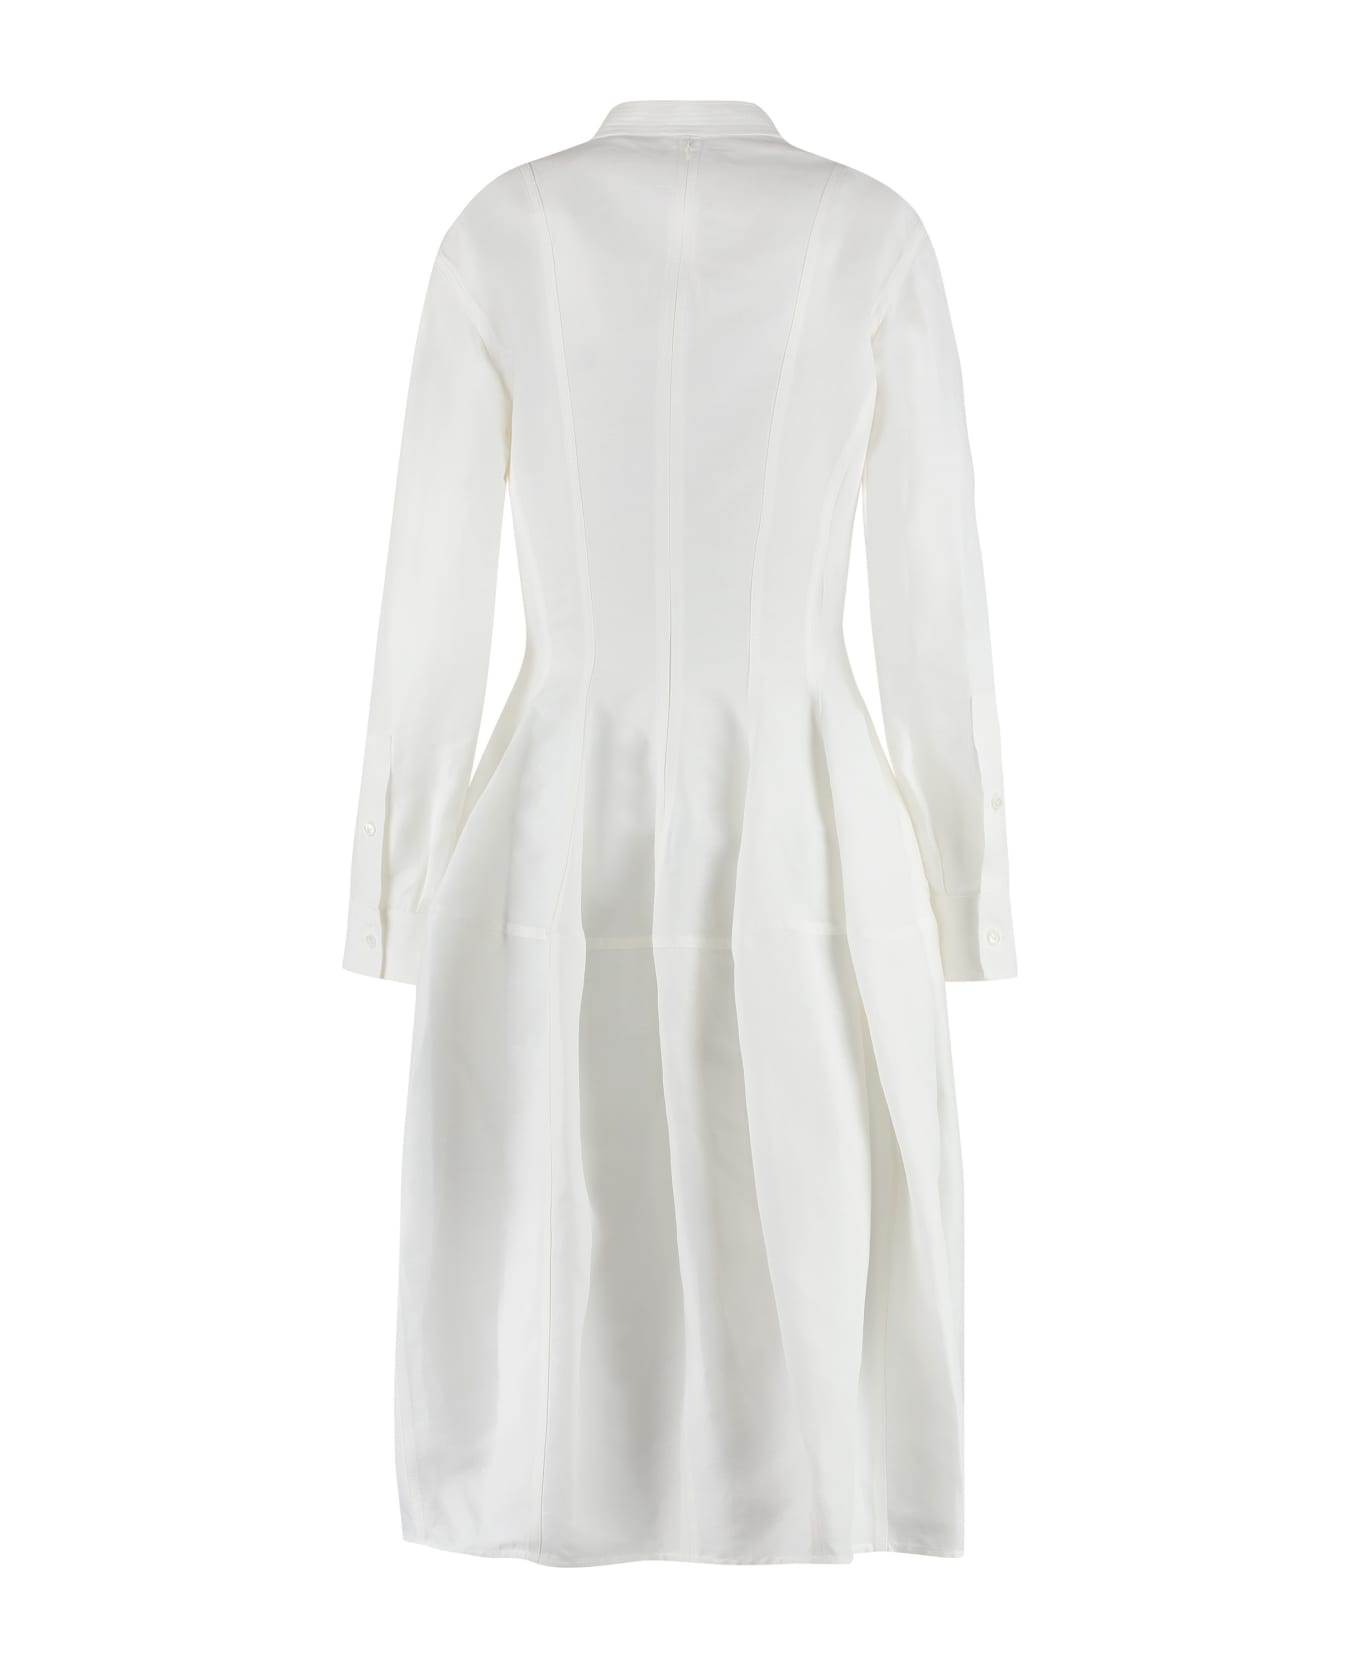 Bottega Veneta Linen And Viscose Dress - White